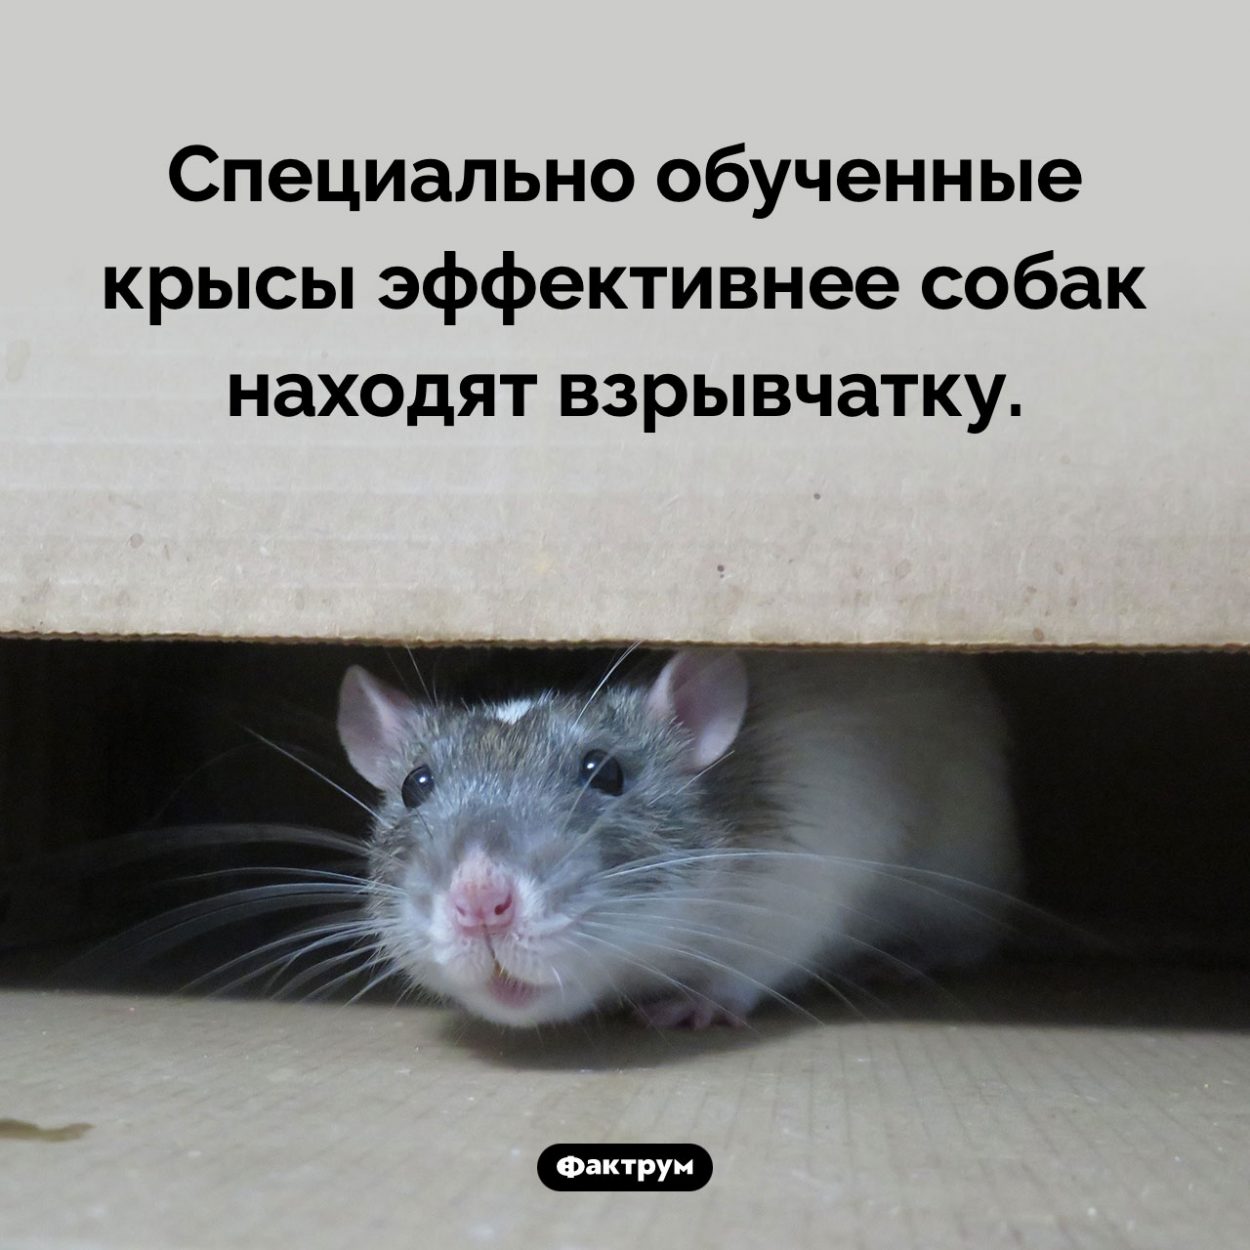 Крысы-саперы. Специально обученные крысы эффективнее собак находят взрывчатку.